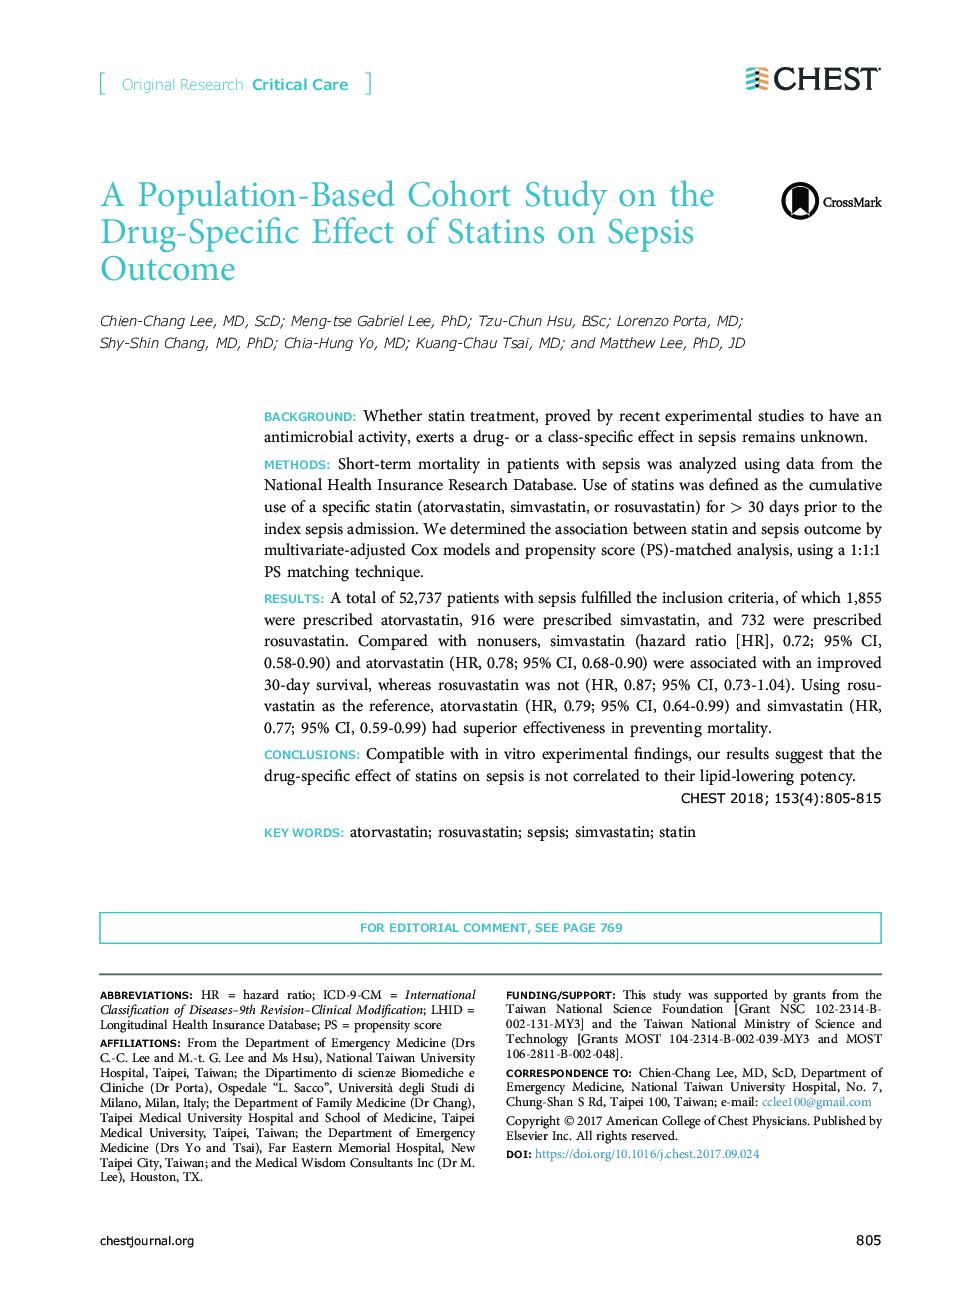 یک مطالعه کوهورت مبتنی بر جمعیت بر روی تاثیرات متفاوتی از استاتین ها در نتیجه سپسیس 